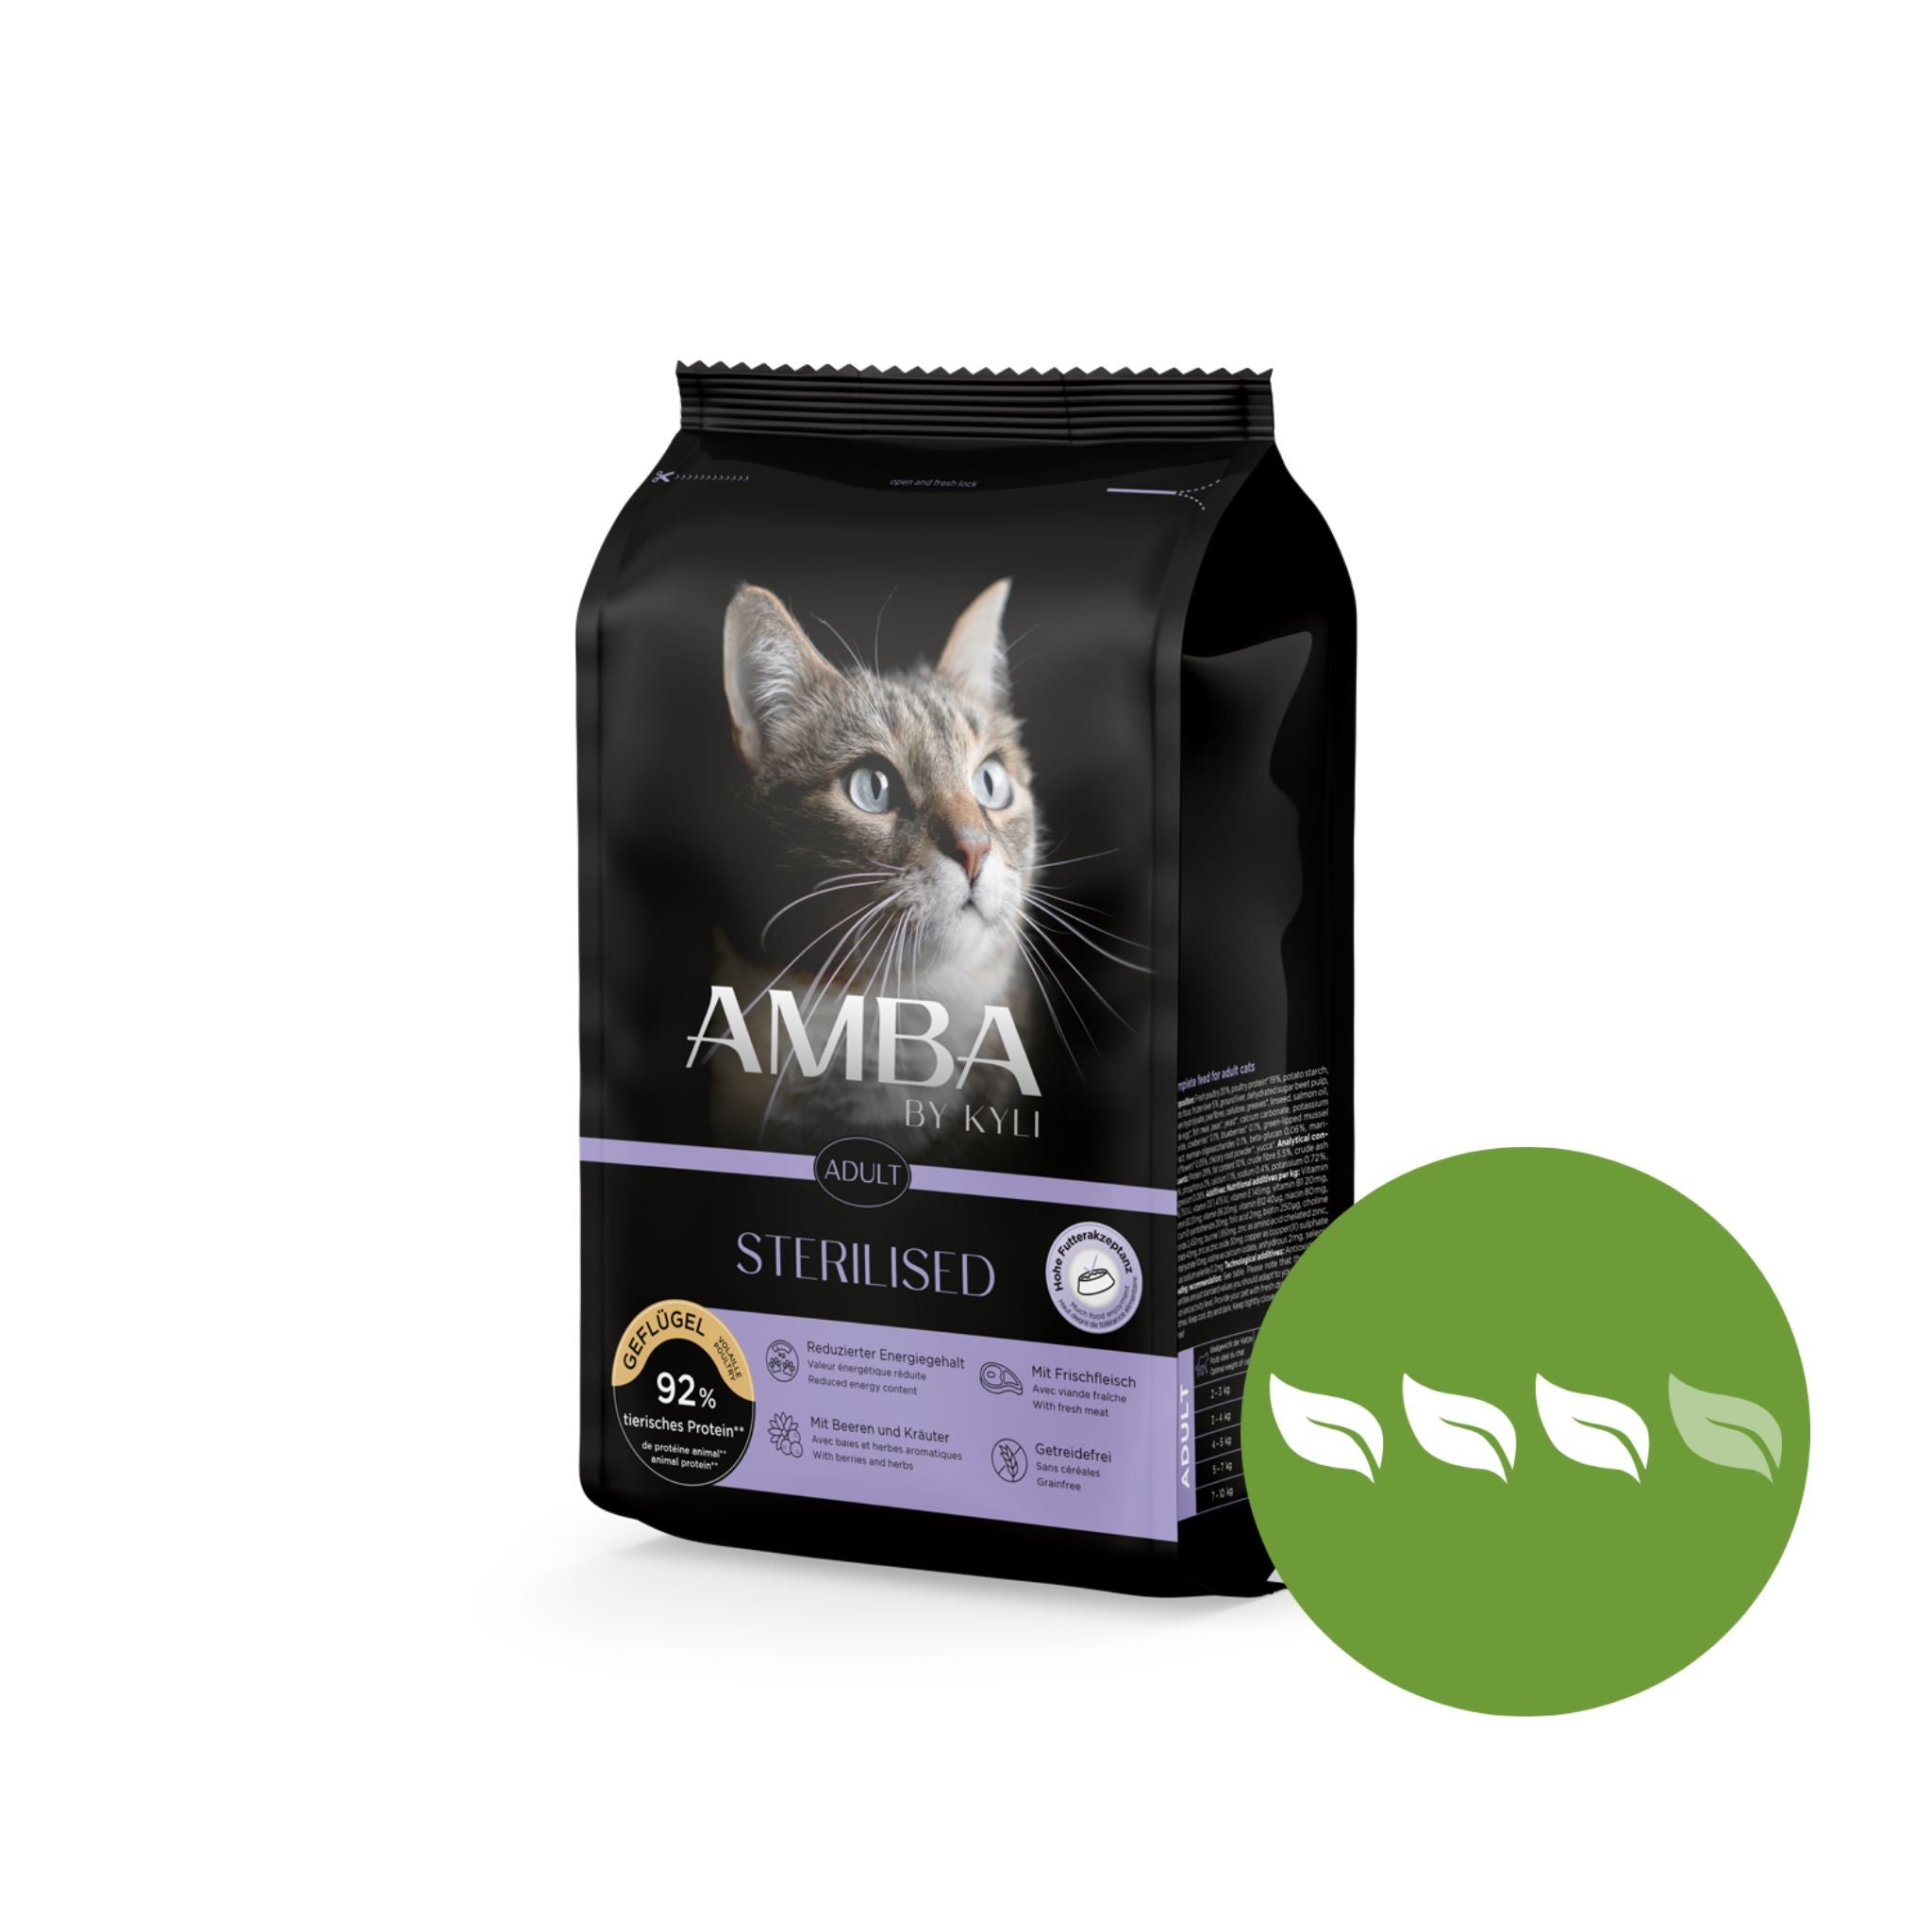 Artikel mit dem Namen AMBA by kyli Sterilised im Shop von zoo.de , dem Onlineshop für nachhaltiges Hundefutter und Katzenfutter.